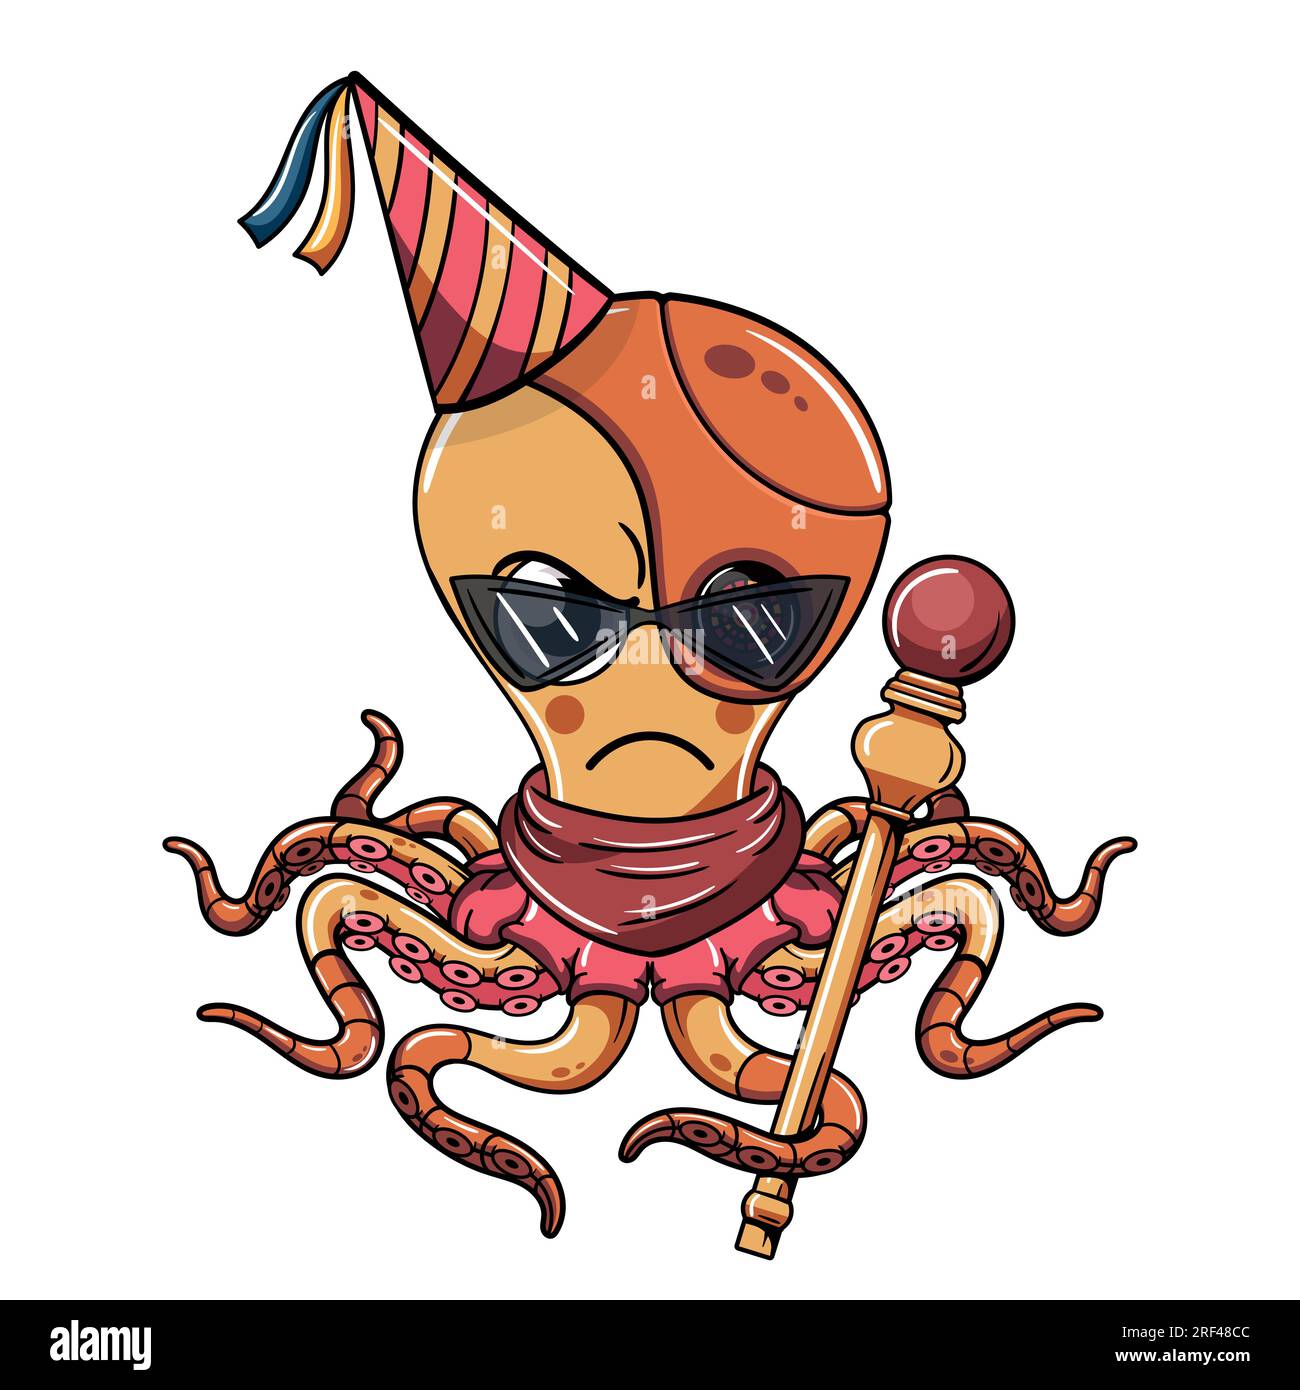 Personnage de poulpe cyborg de dessin animé célébrant avec le chapeau d'anniversaire et tenant un sceptre. Illustration pour la fantaisie, la science-fiction et la bande dessinée d'aventure Illustration de Vecteur